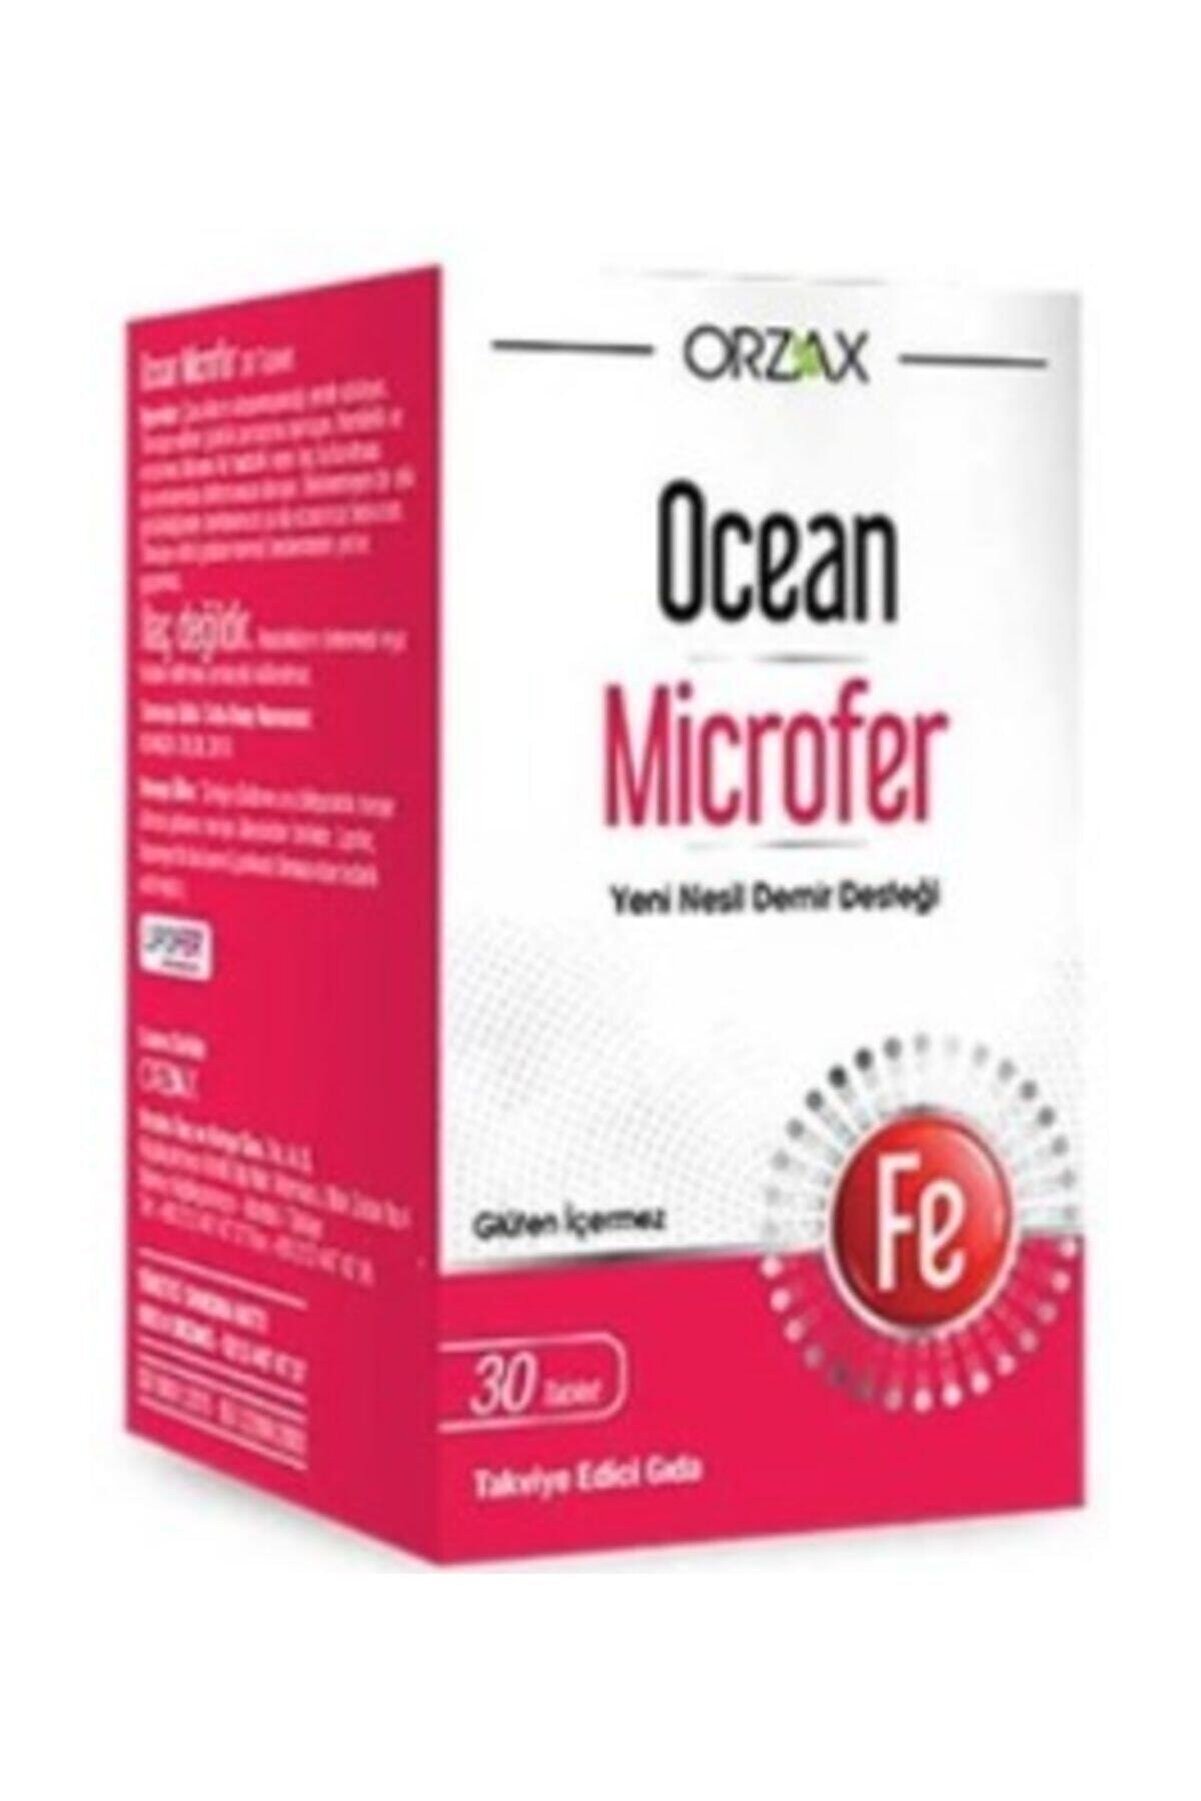 Ocean Ocean Microfer 30 Tablet